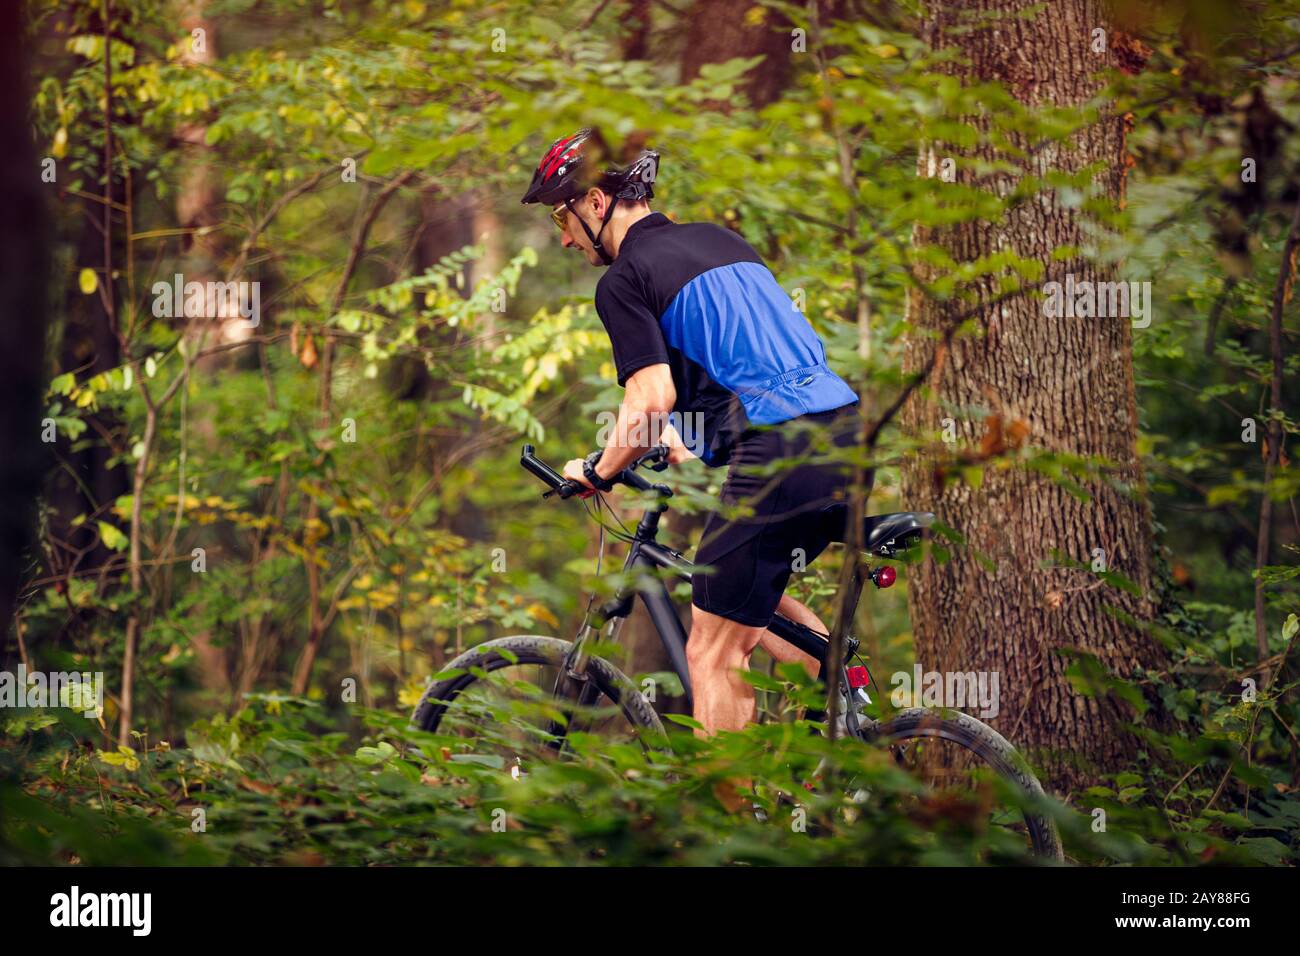 Cycliste dans la forêt verte vélo de randonnée et porter des vêtements de protection .Printemps, nature, concept de sport Banque D'Images